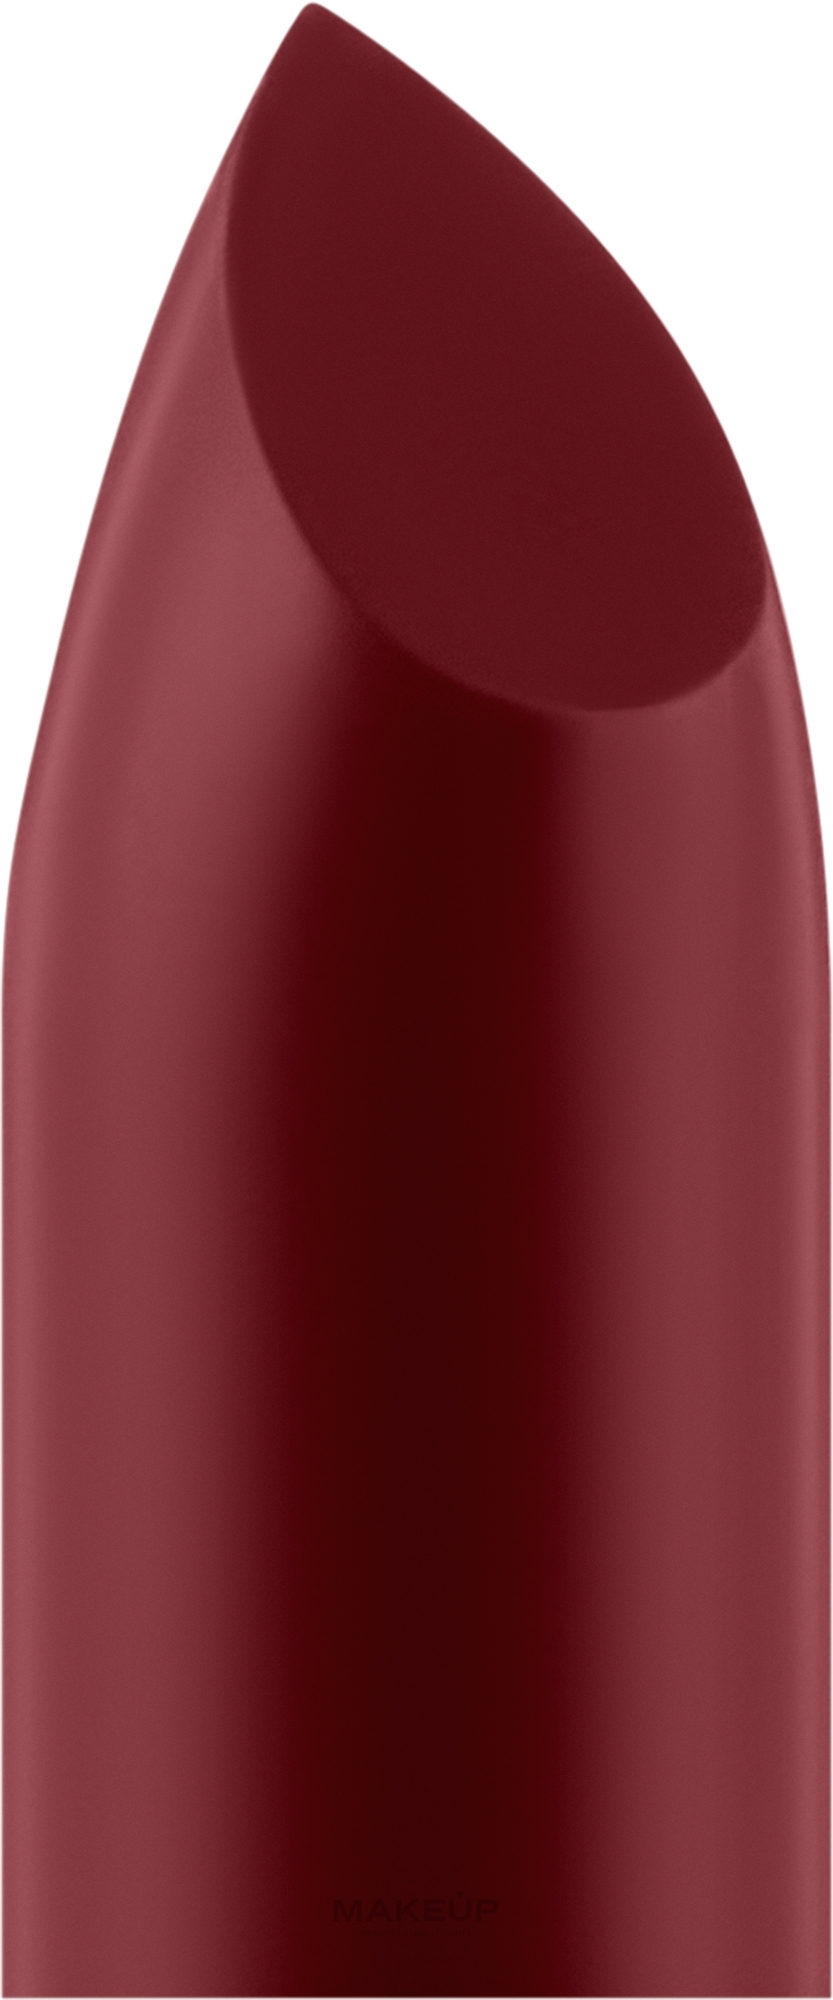 Помада для губ - PuroBio Cosmetics Semi-Matte Lipstick Refill (сменный блок) — фото 103